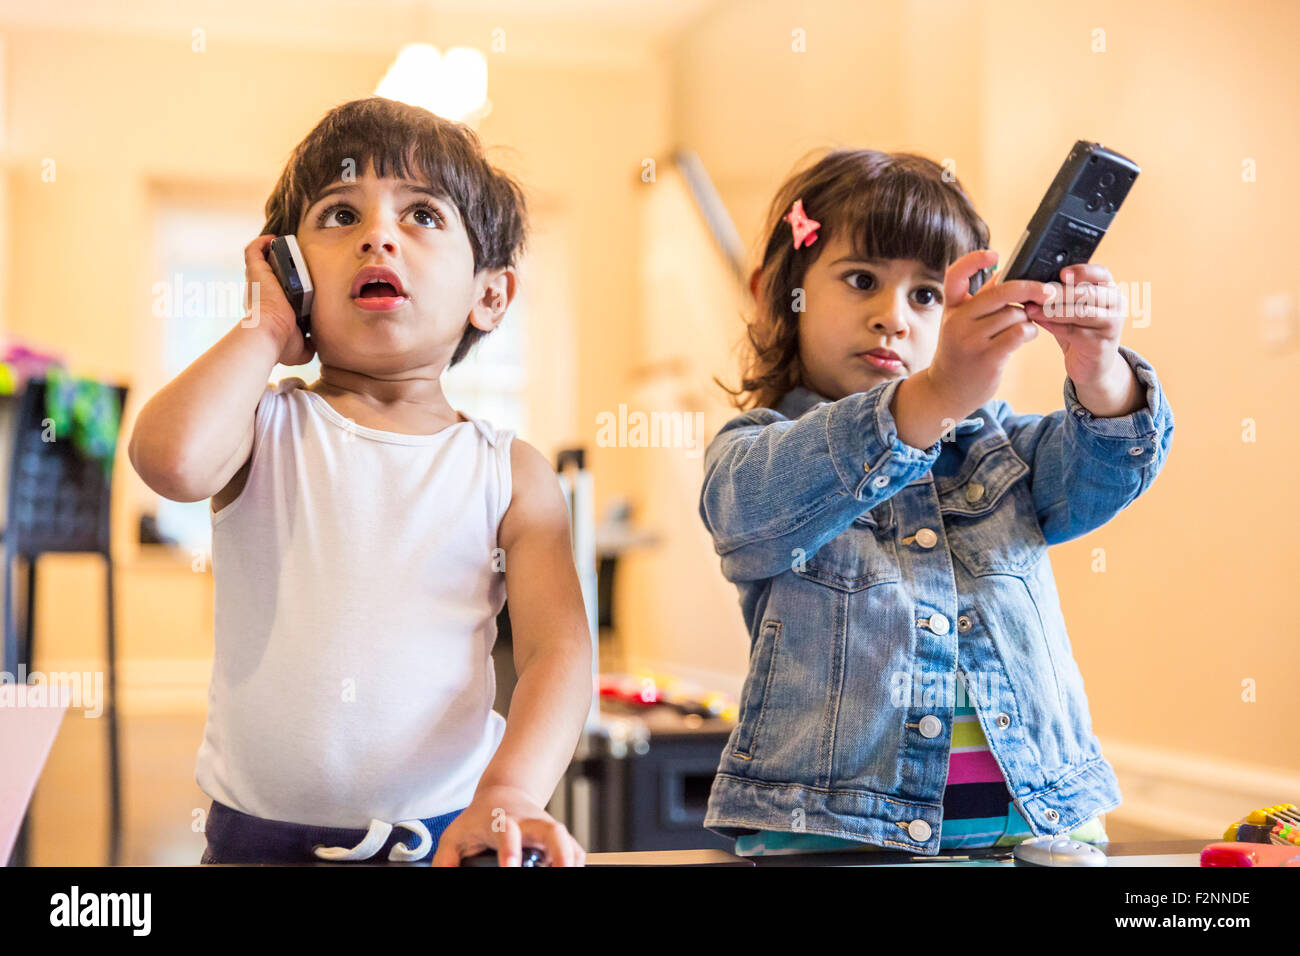 Frère et sœur jouant avec téléphone cellulaire et commande à distance Banque D'Images